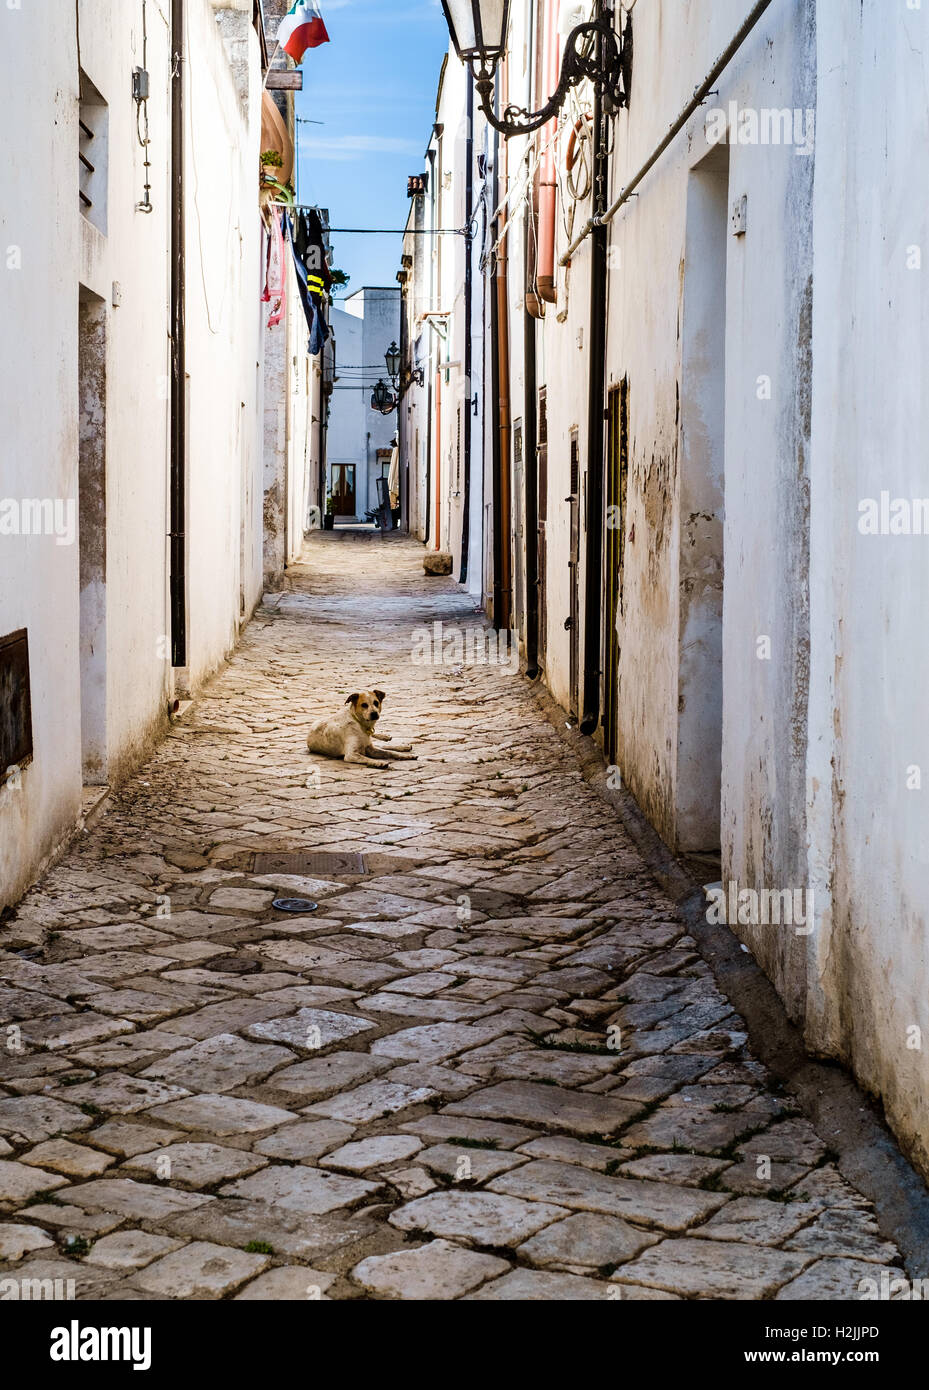 Einsamer streunender Hund, der in einer engen Gasse liegt. Salento, Apulien, Italien Stockfoto